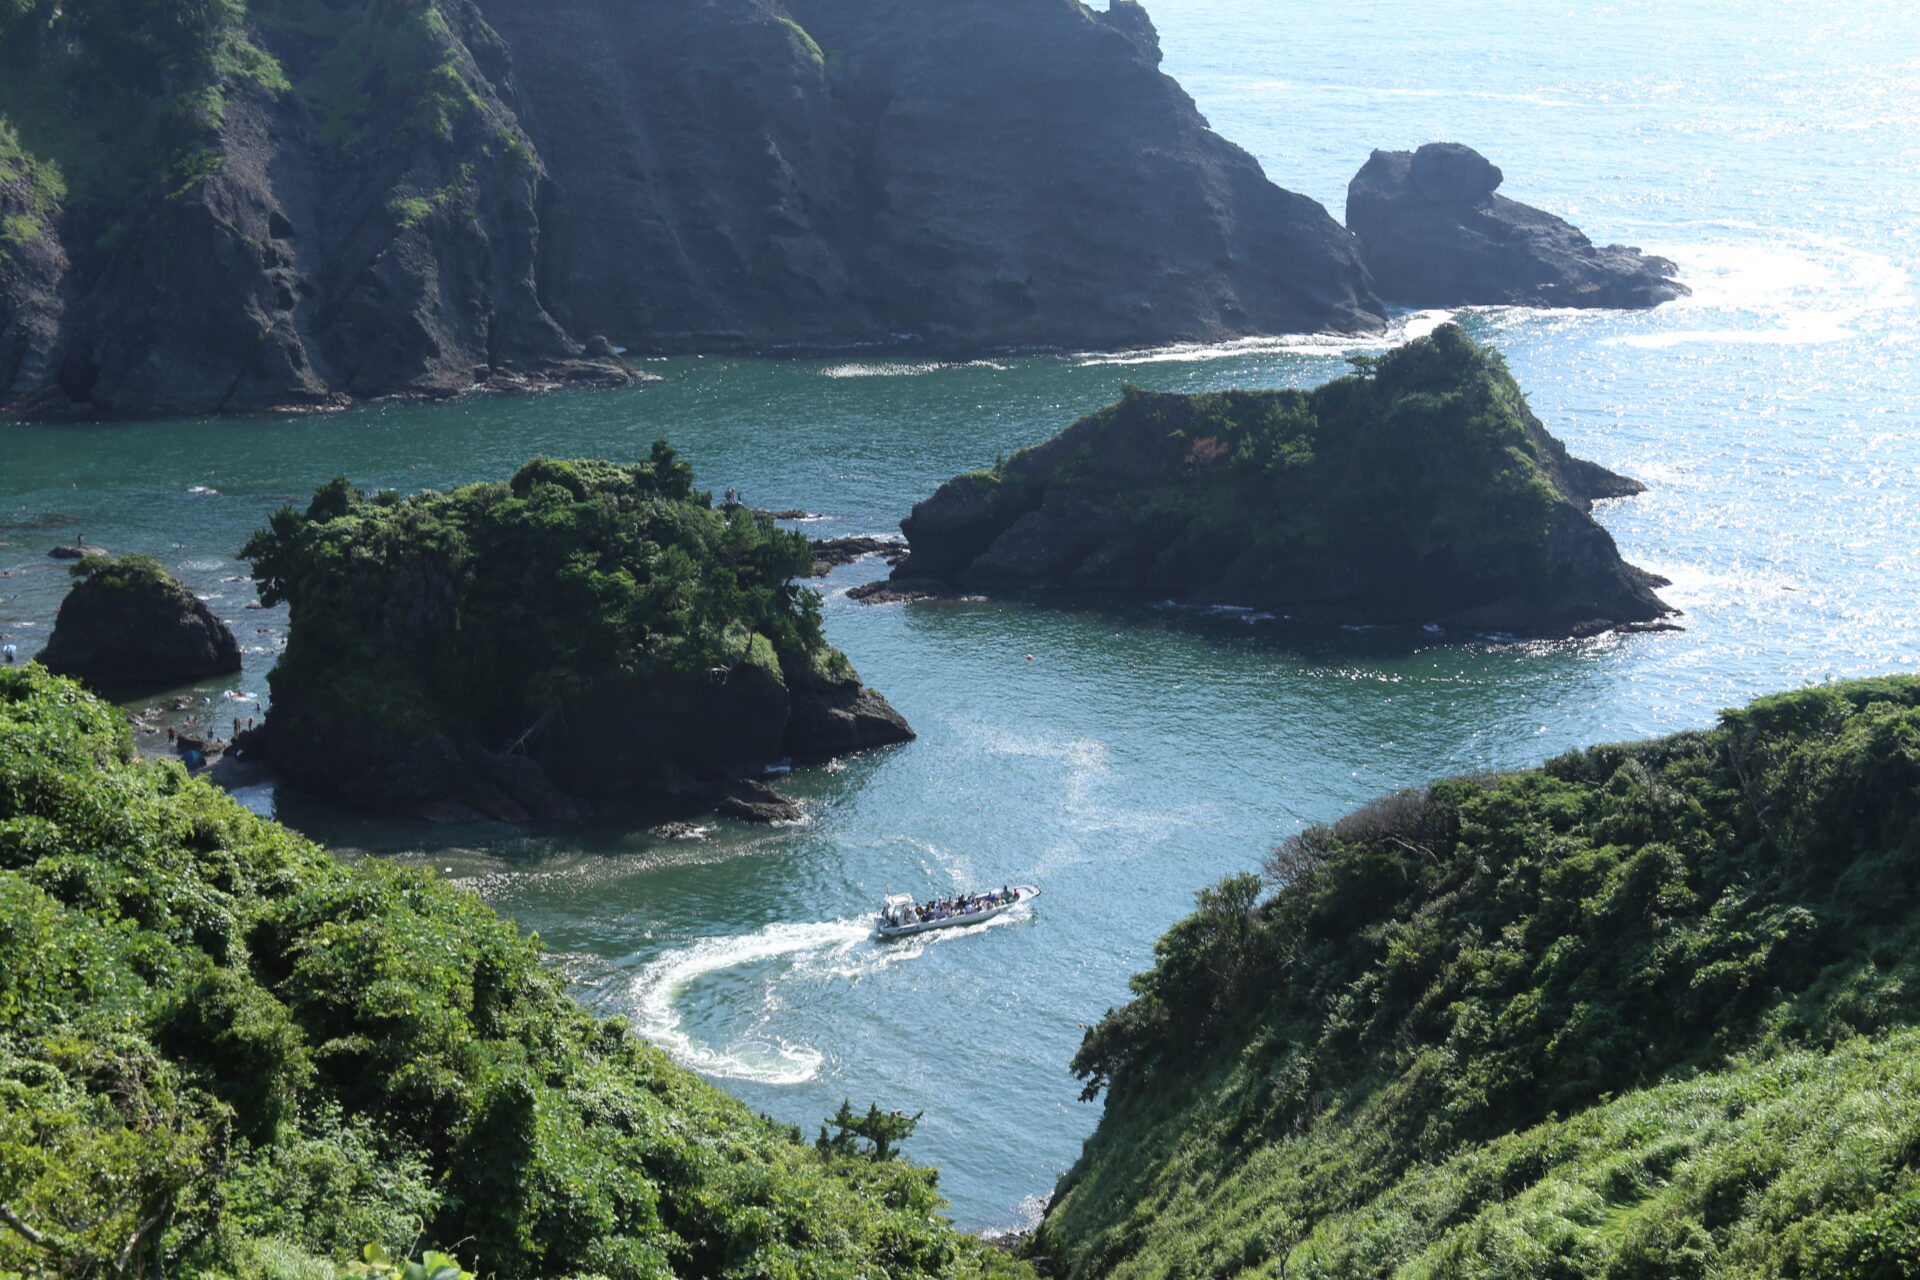 Izu coastline with boat